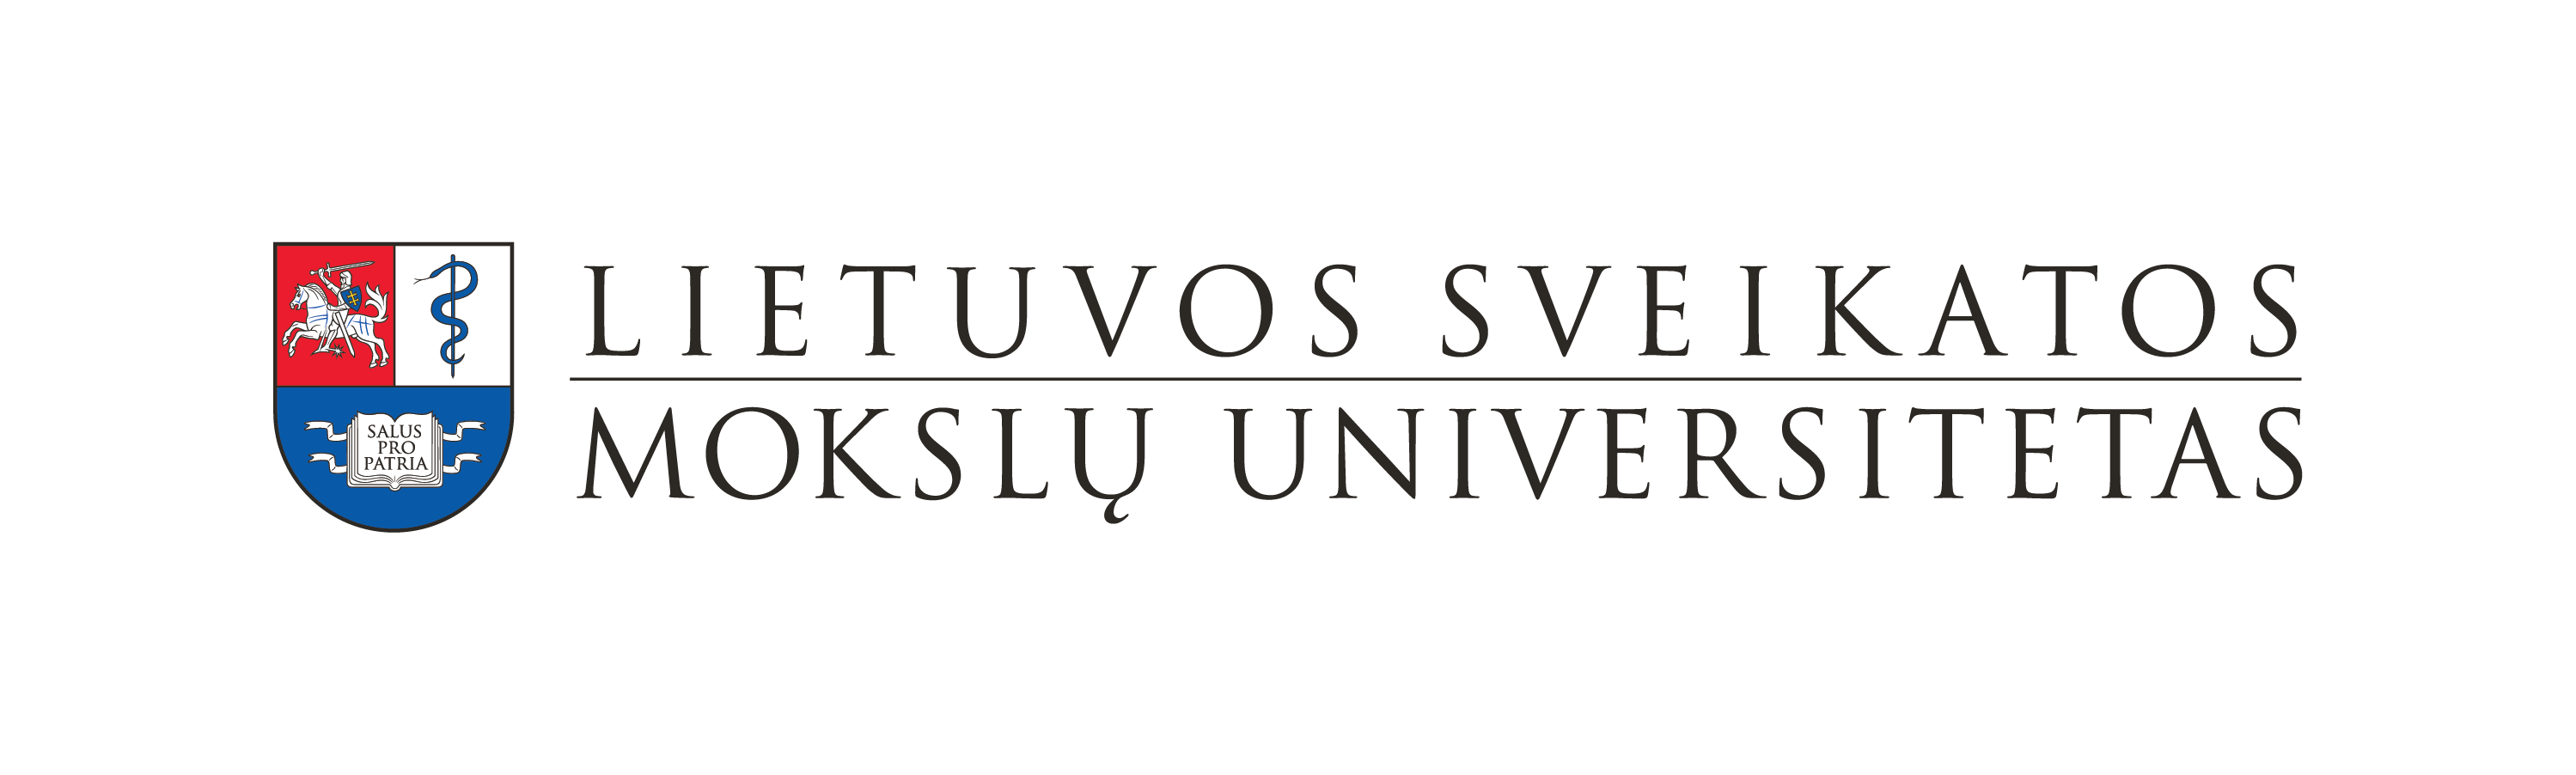 Kaunas Univ logo